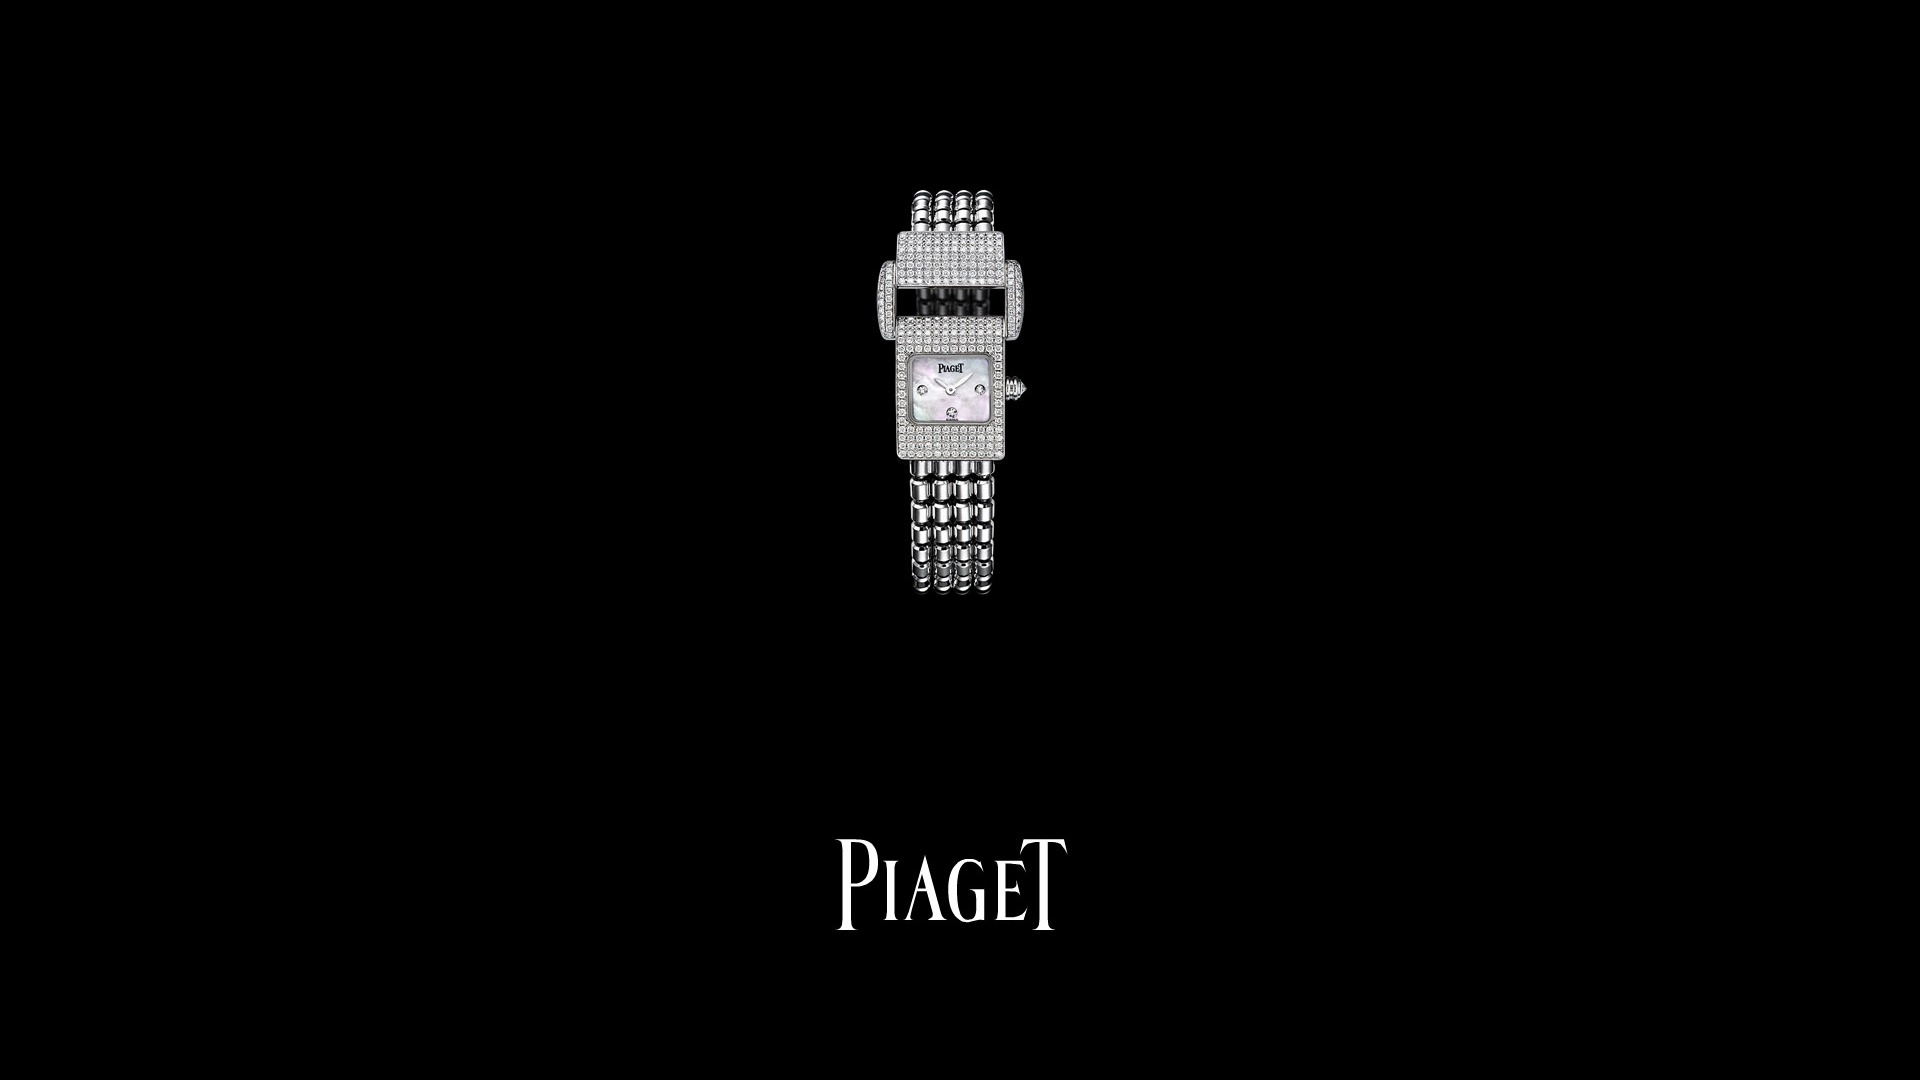 Piaget Diamante fondos de escritorio de reloj (2) #18 - 1920x1080